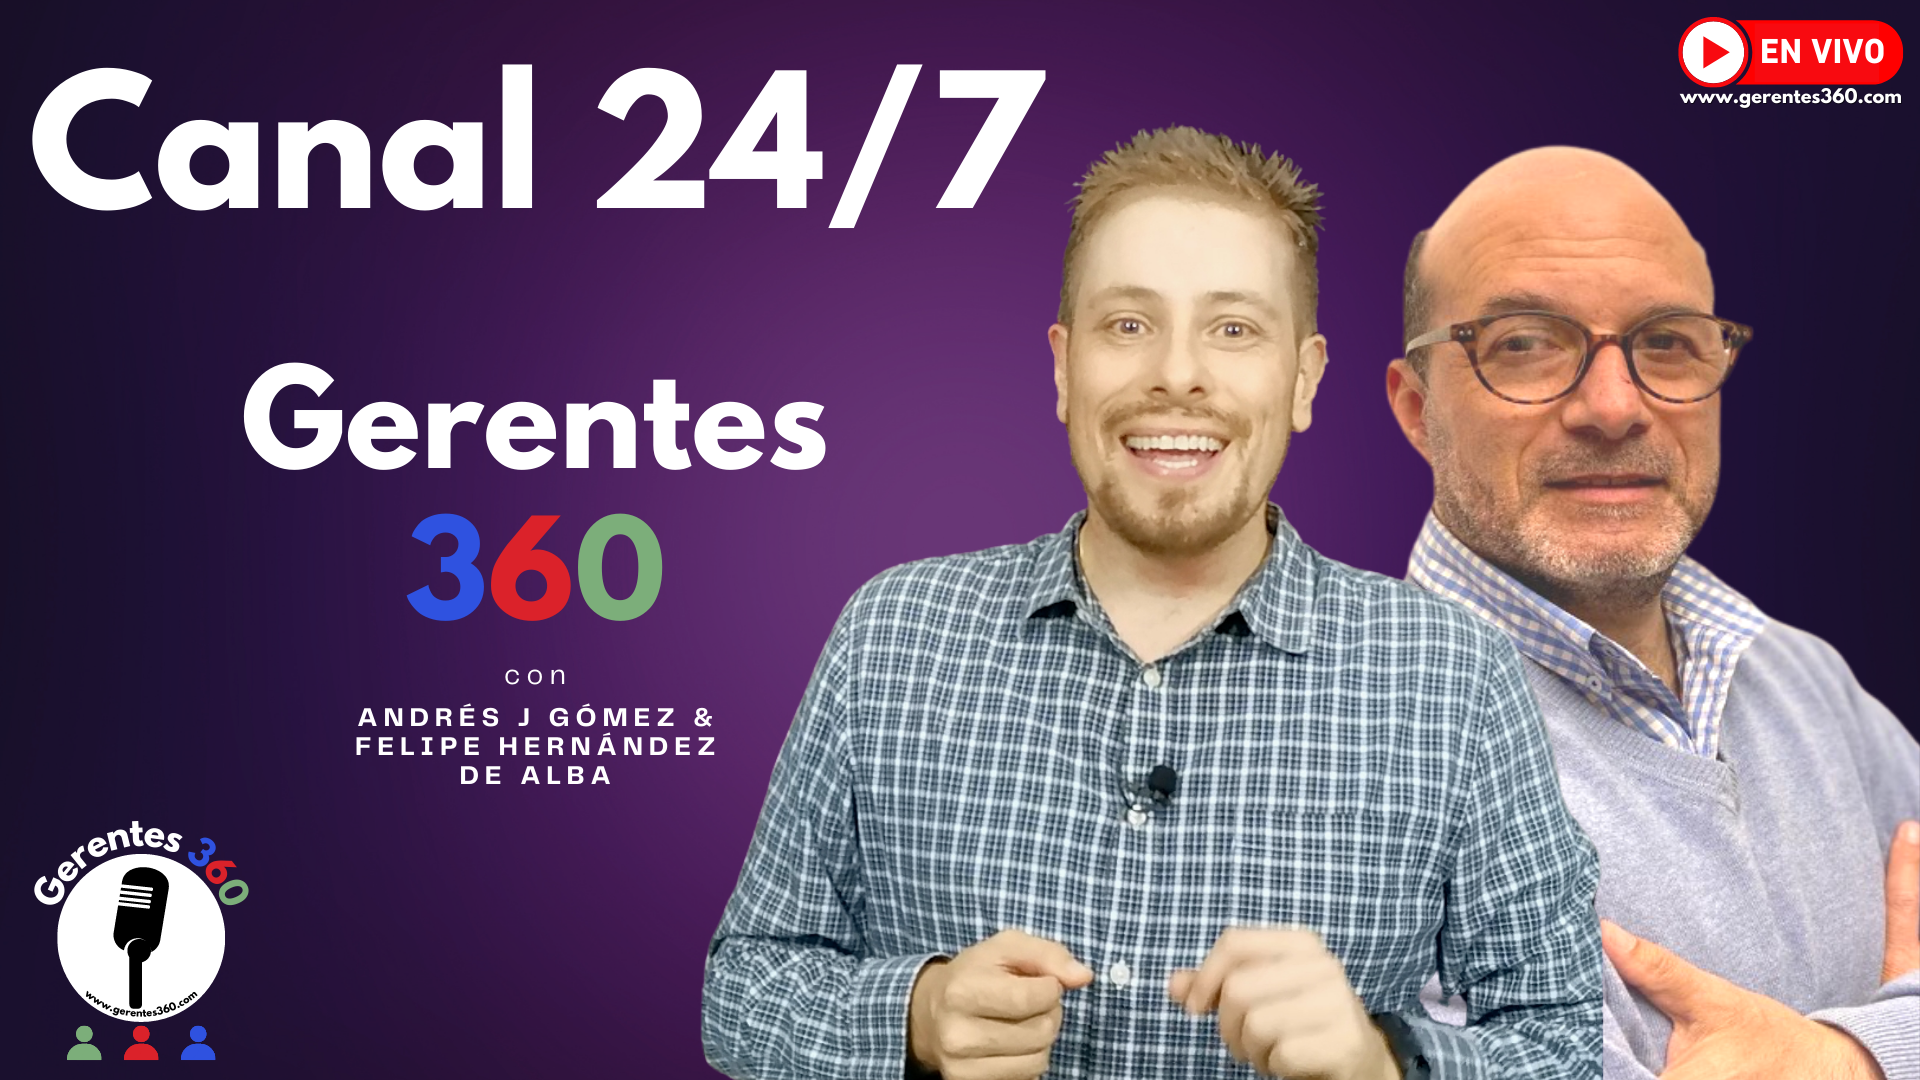 Canal 24/7 del Video Blog y Podcast Gerentes 360 | Crecimiento Empresarial para Gerentes, CEOs, Empresarios y Emprendedores, junto a expertos | www.gerentes360.com